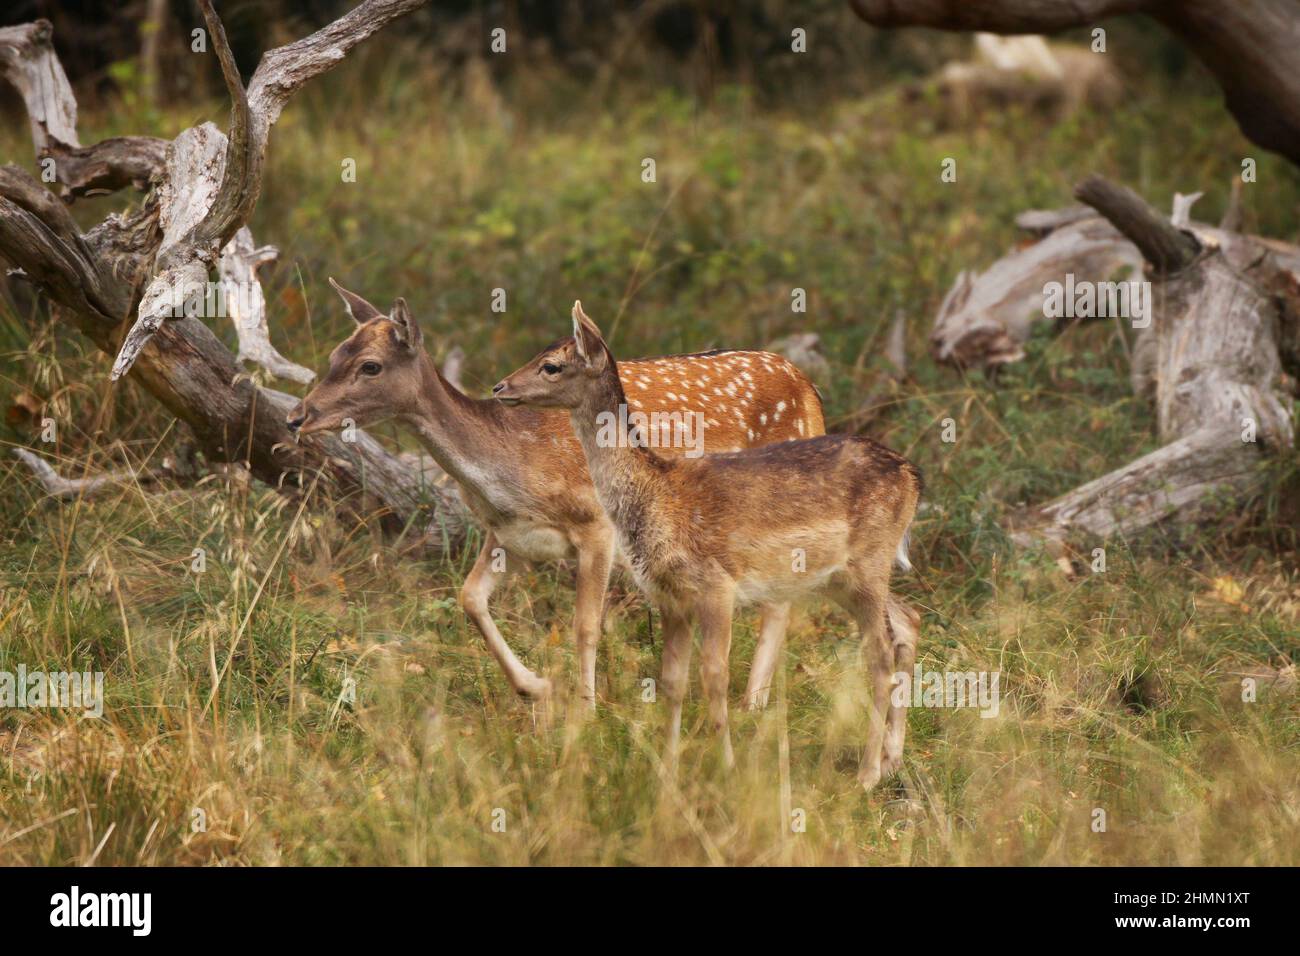 Sika deer, Tame sika deer, Tame deer (Cervus nippon), hind with juvenile, Germany Stock Photo